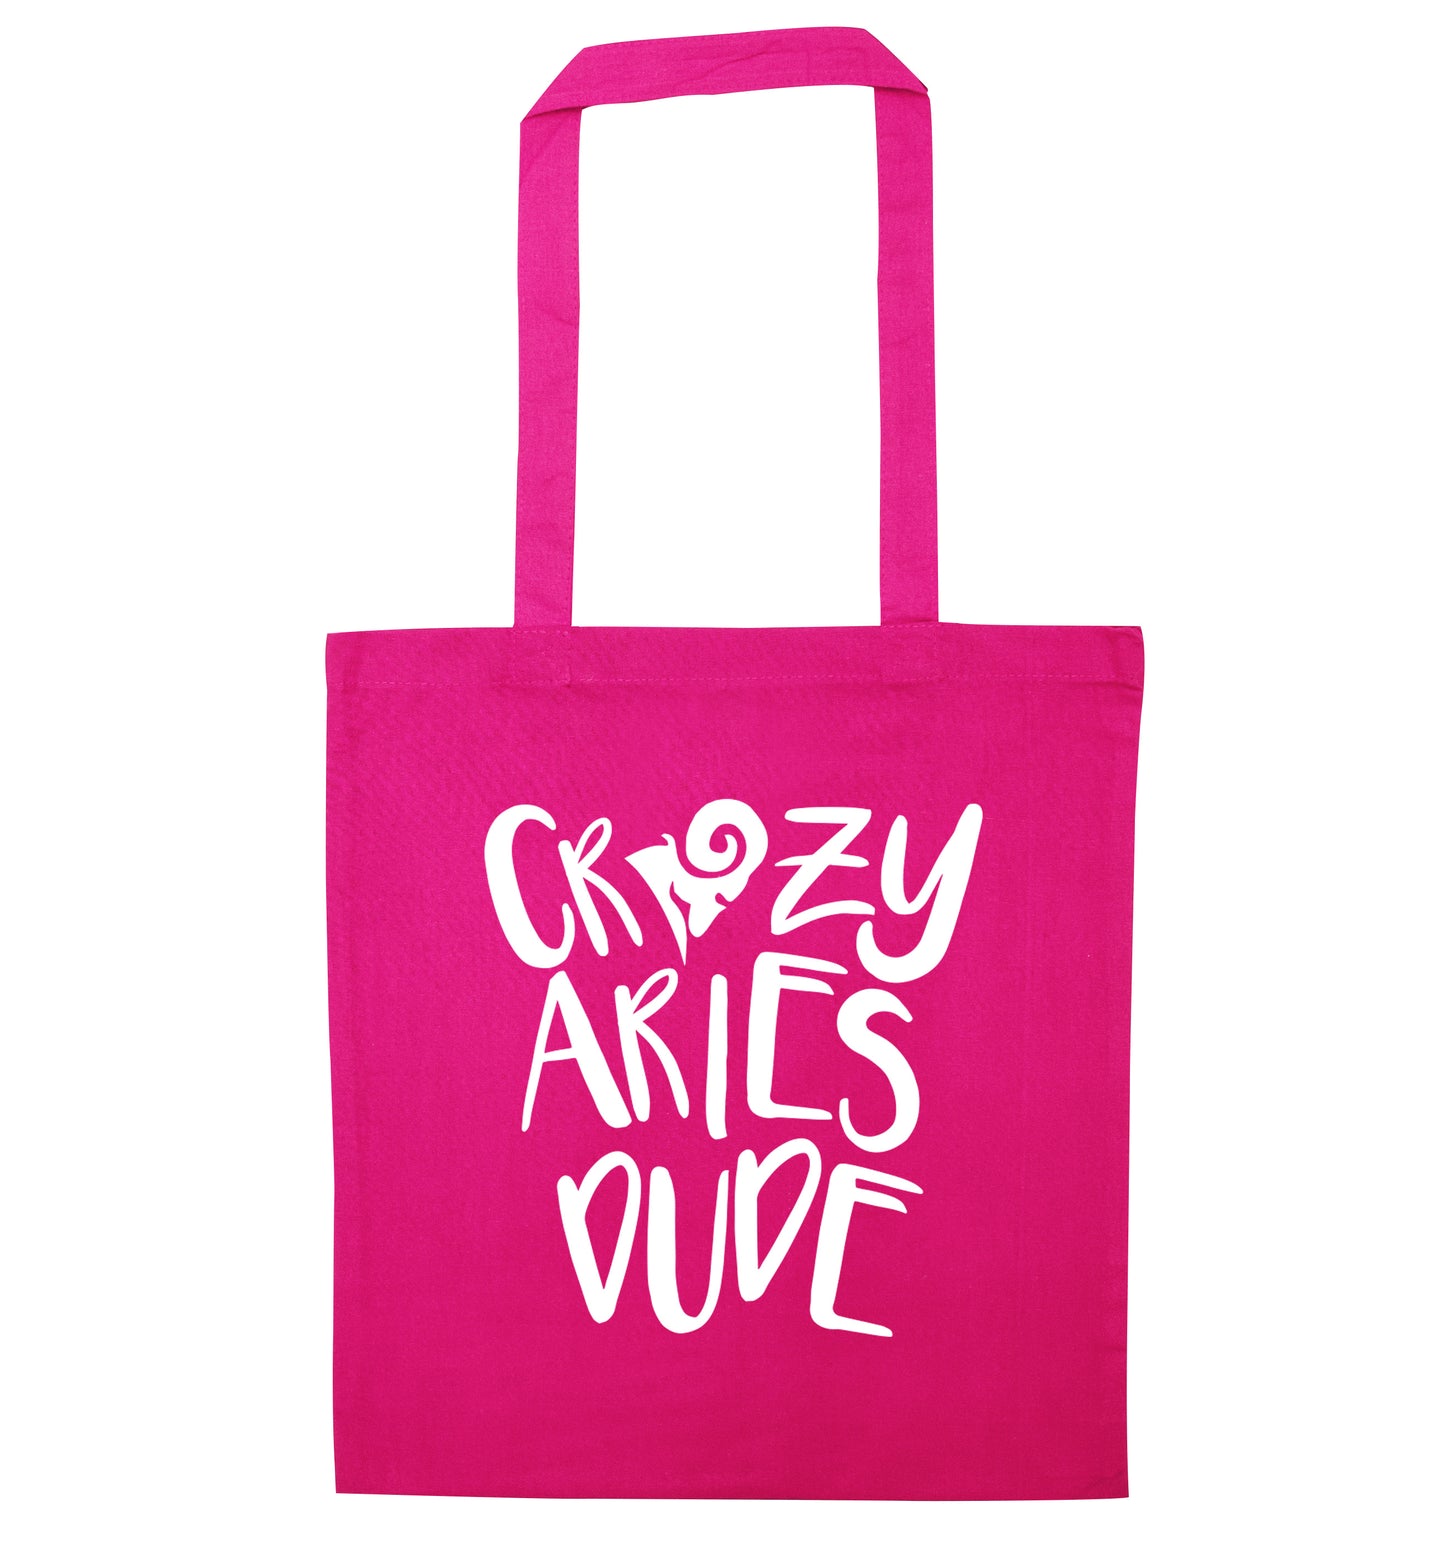 Crazy aries dude pink tote bag